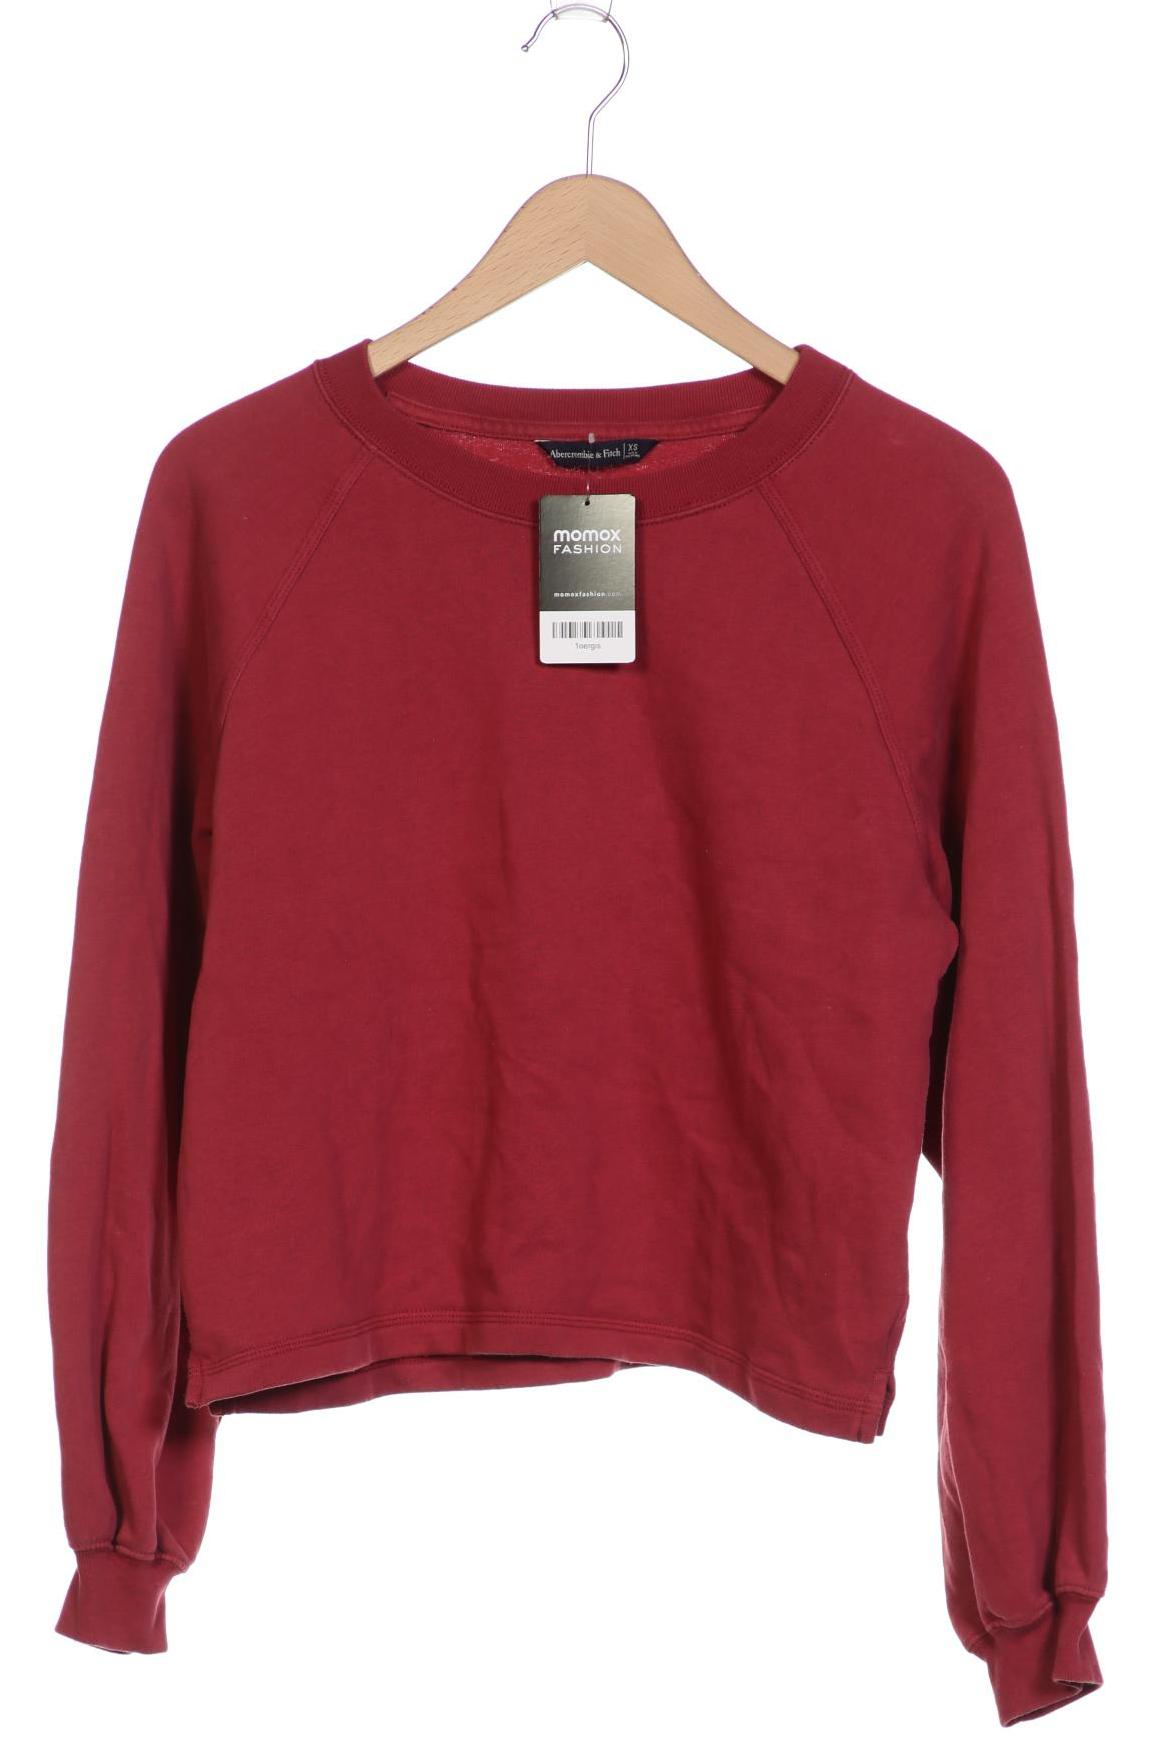 Abercrombie & Fitch Damen Sweatshirt, pink, Gr. 34 von Abercrombie & Fitch